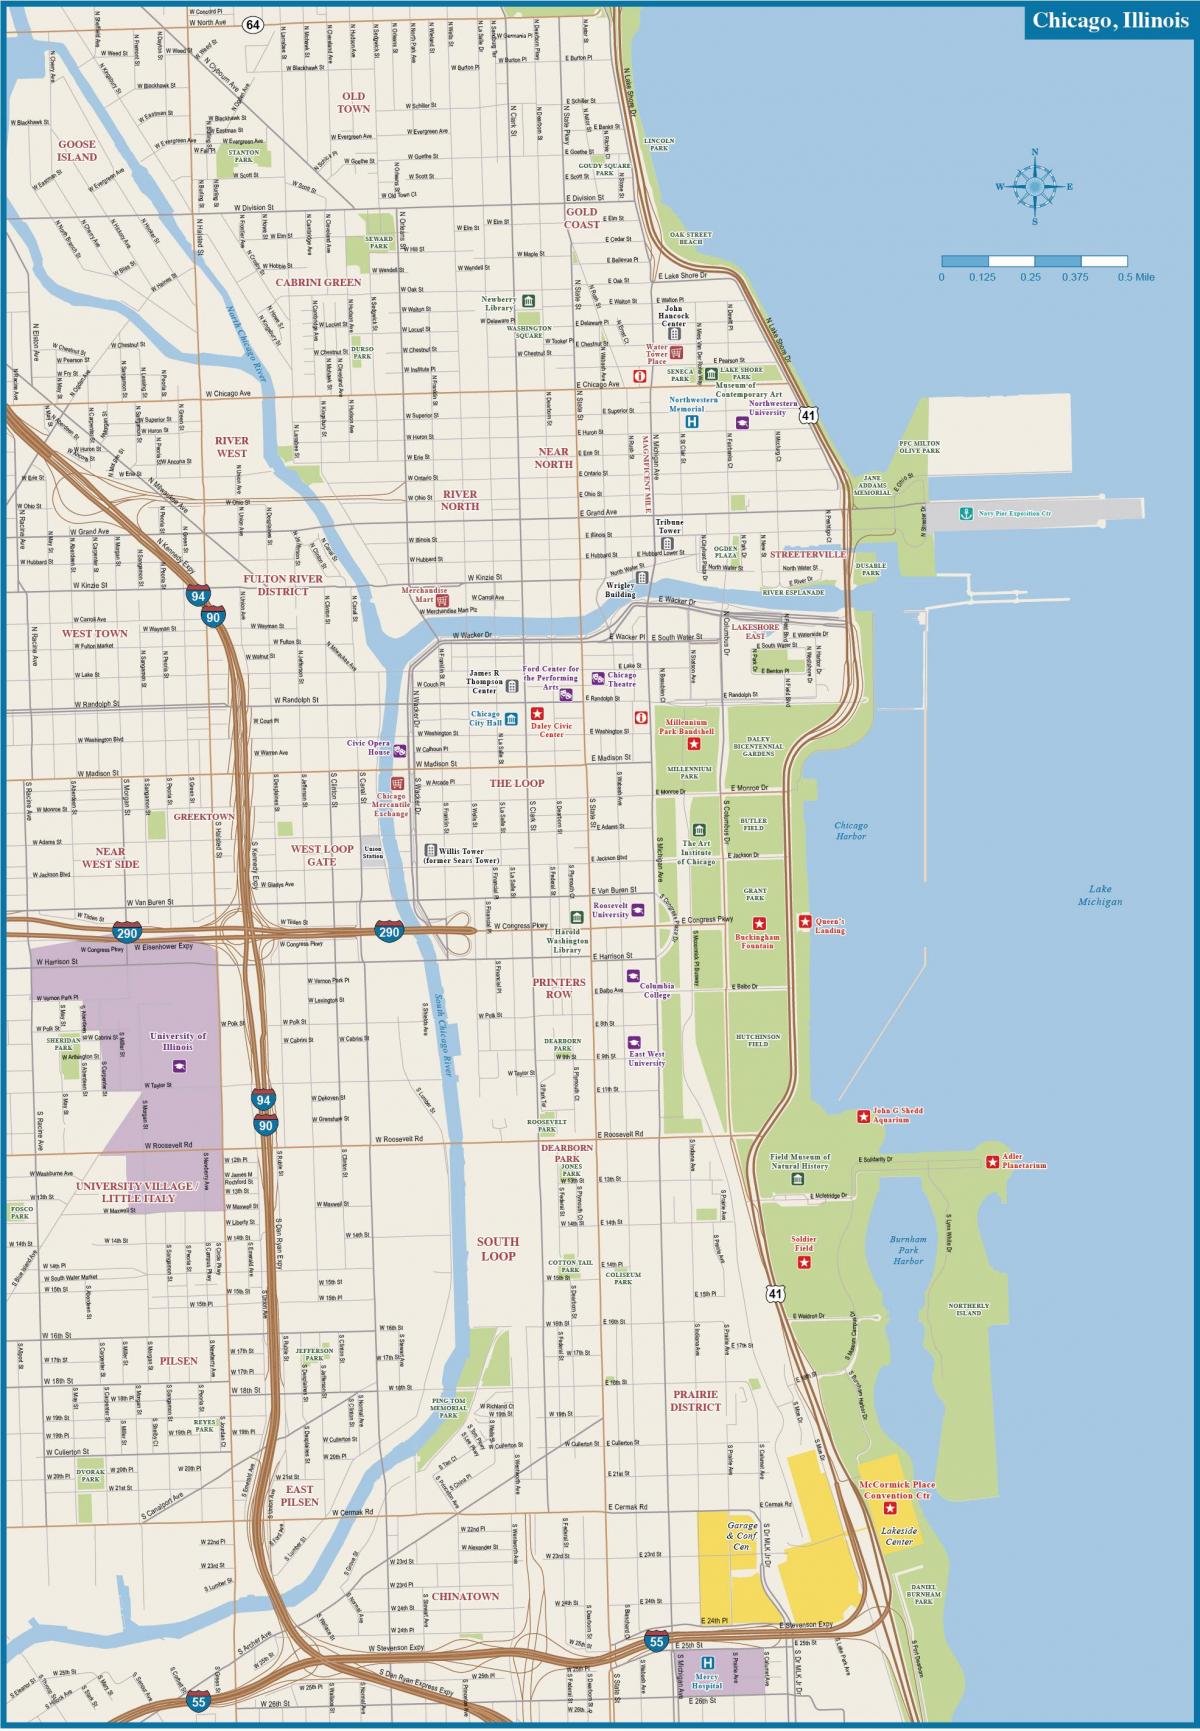 Plan du centre ville de Chicago